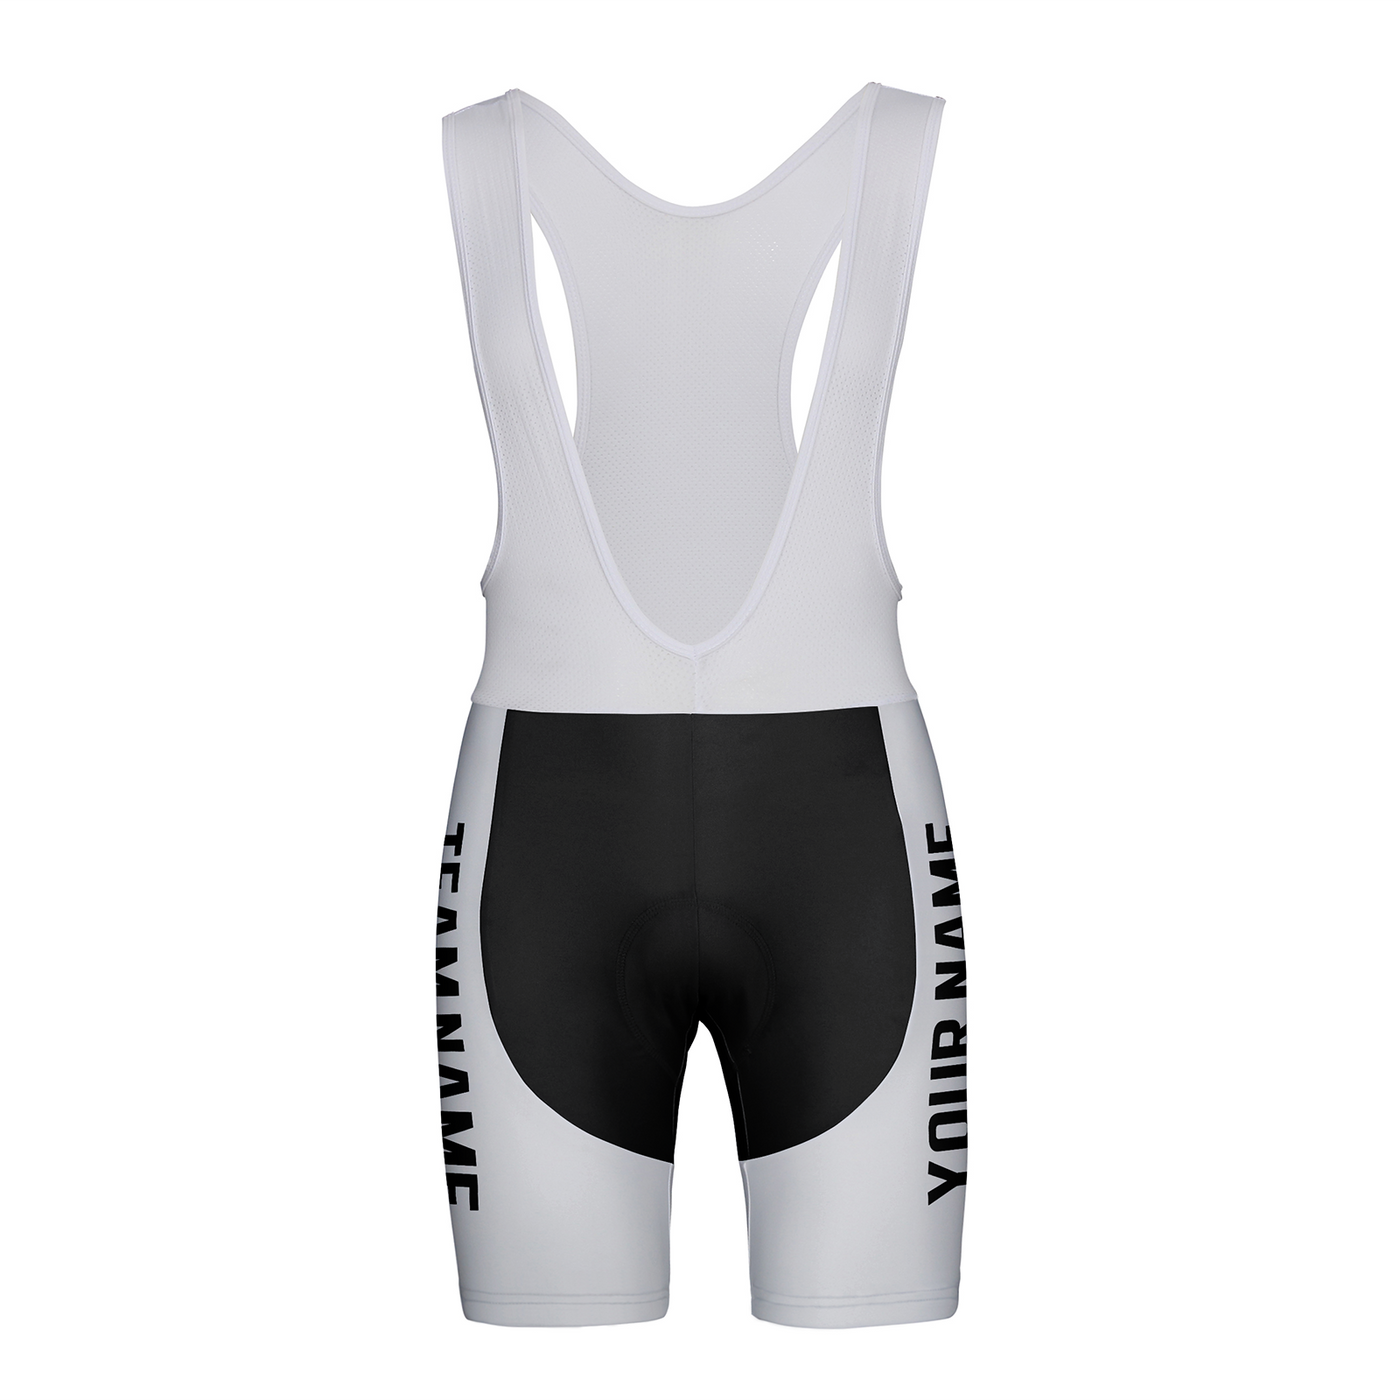 Customized Jacksonville Team Unisex Cycling Bib Shorts